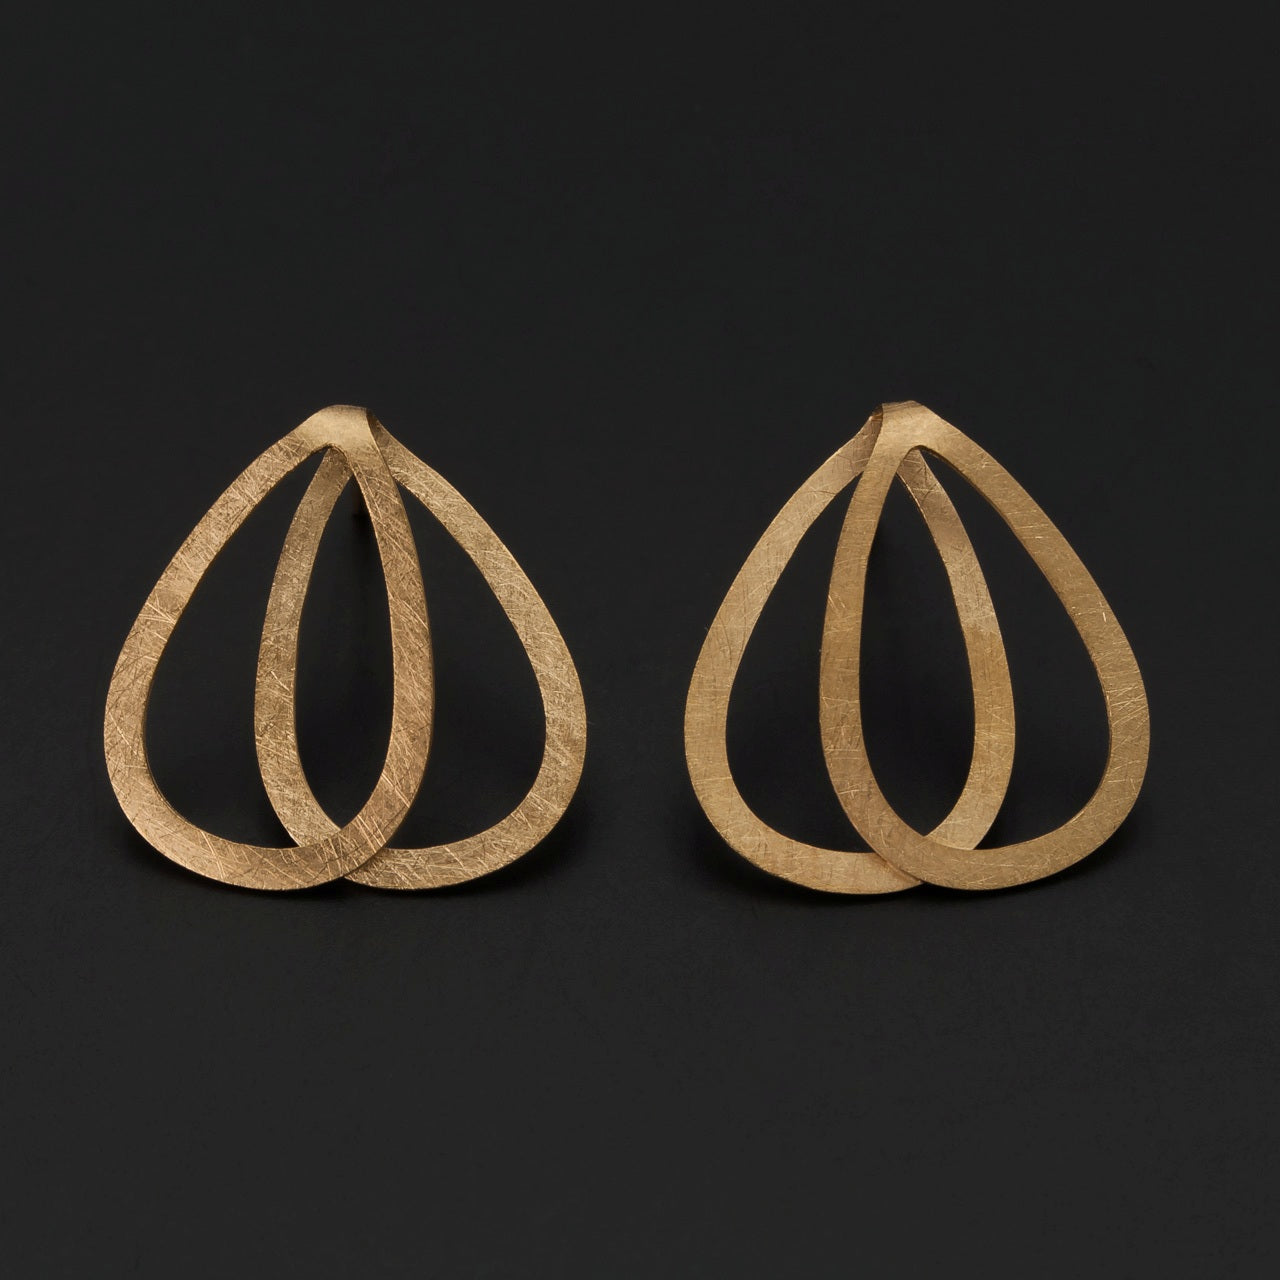 Gold Plated Double Teardrop Earrings - The Nancy Smillie Shop - Art, Jewellery & Designer Gifts Glasgow